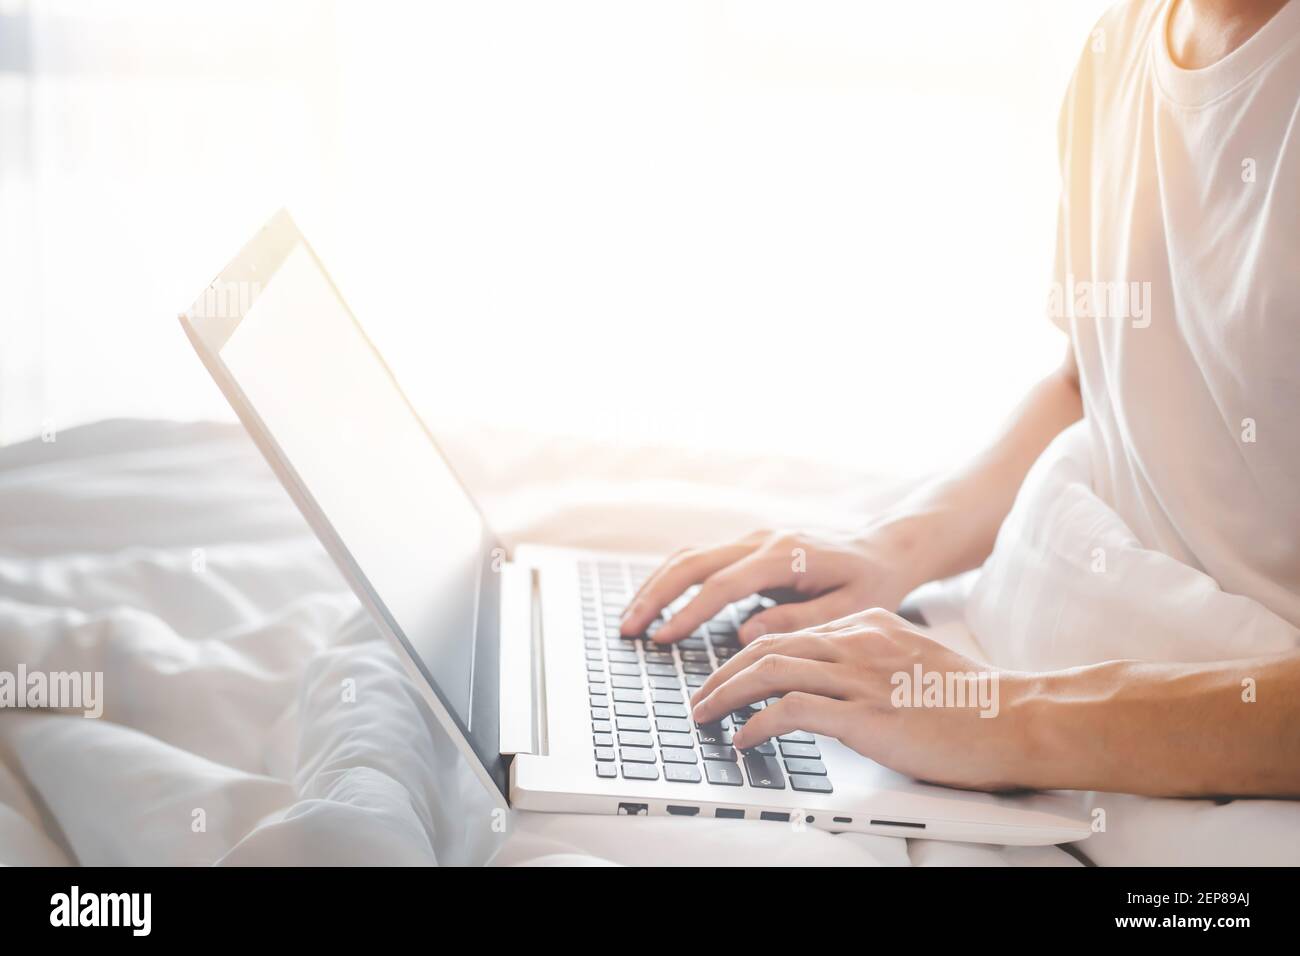 Gros plan d'un jeune homme portant un t-shirt blanc à manches courtes à l'aide d'un ordinateur portable et assis sur un lit blanc et une couverture blanche avec lumière du soleil. Concept de travail de h Banque D'Images